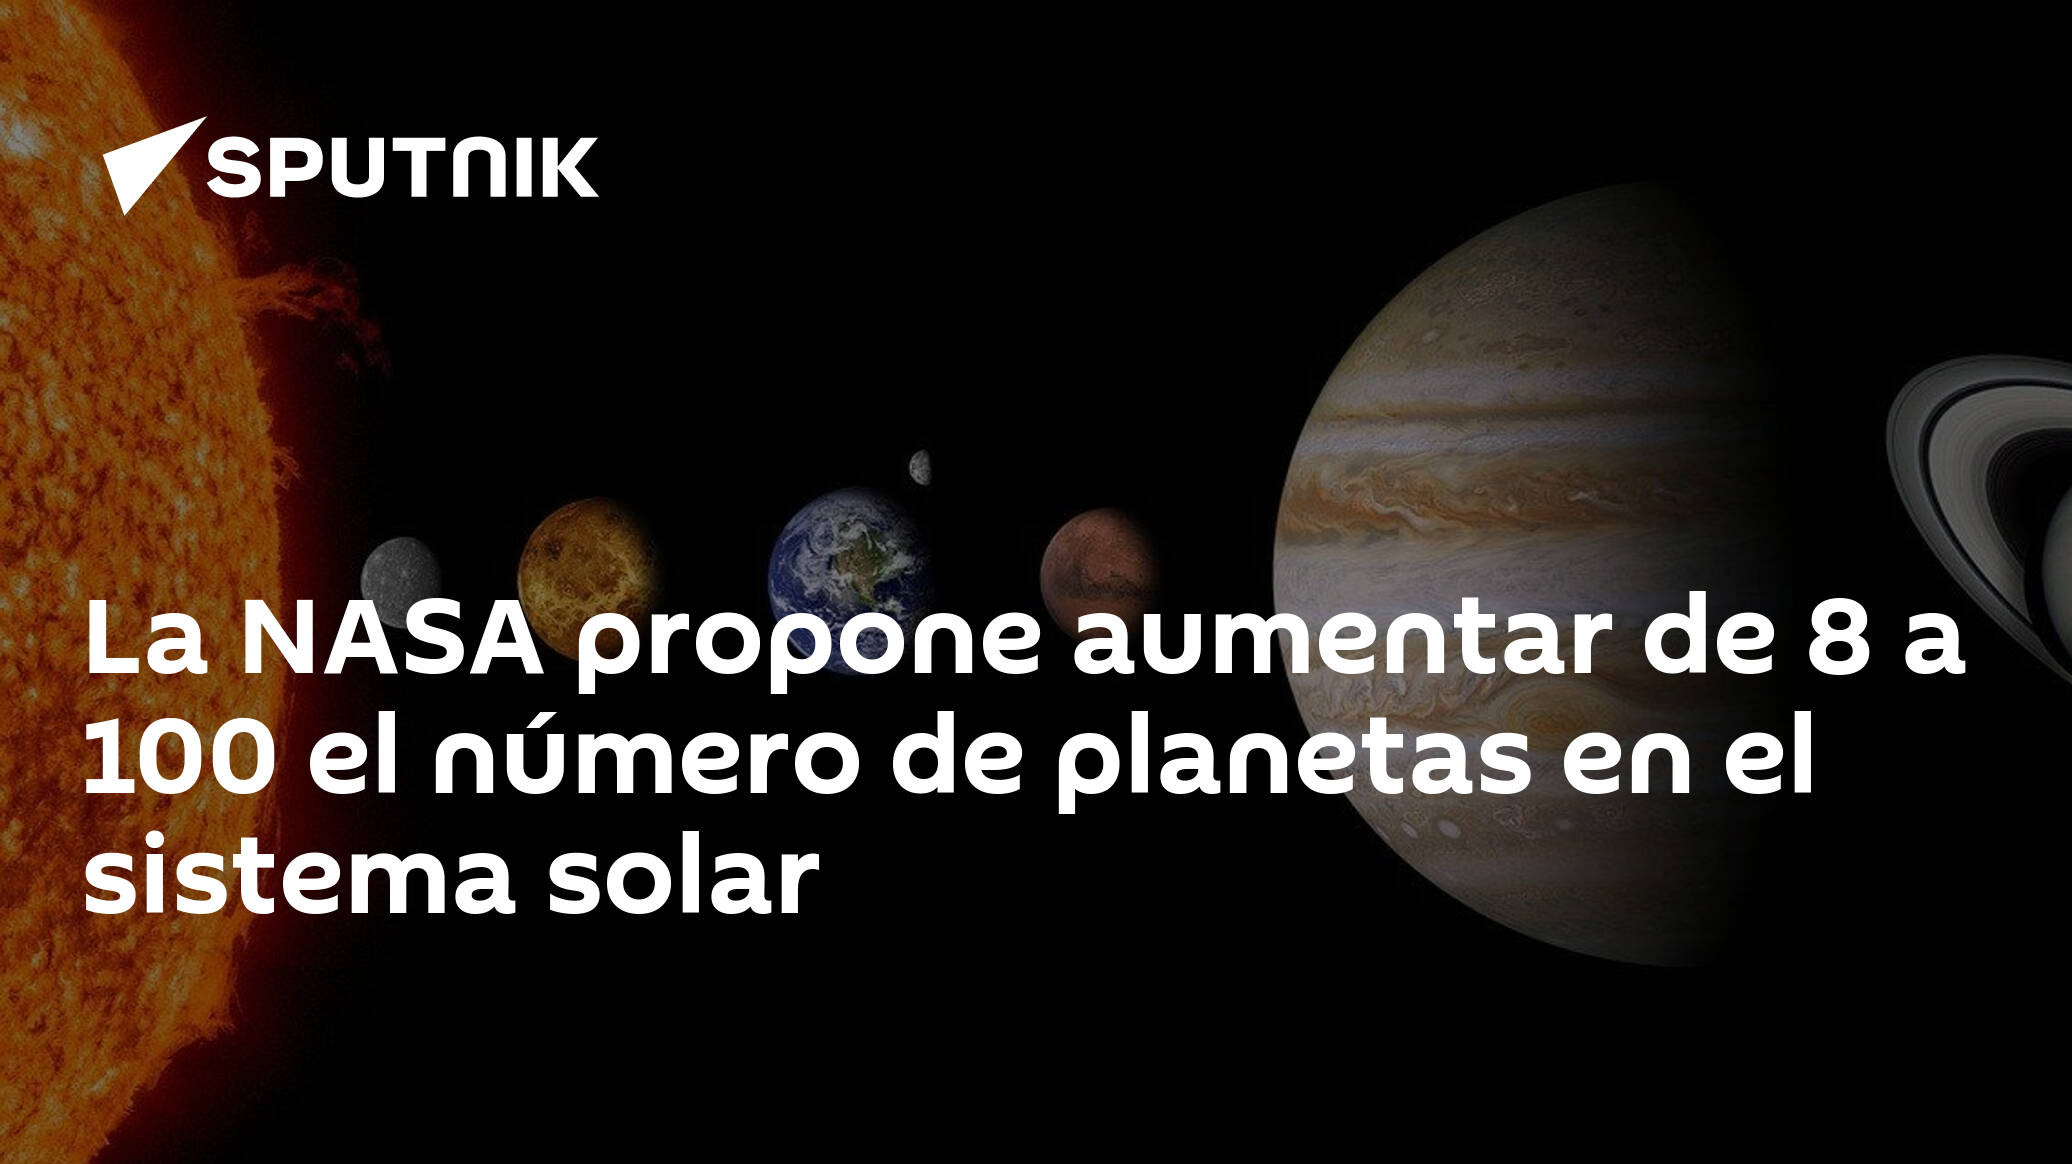 La NASA propone aumentar de 8 a 100 el número de planetas en el sistema  solar - 22.02.2017, Sputnik Mundo